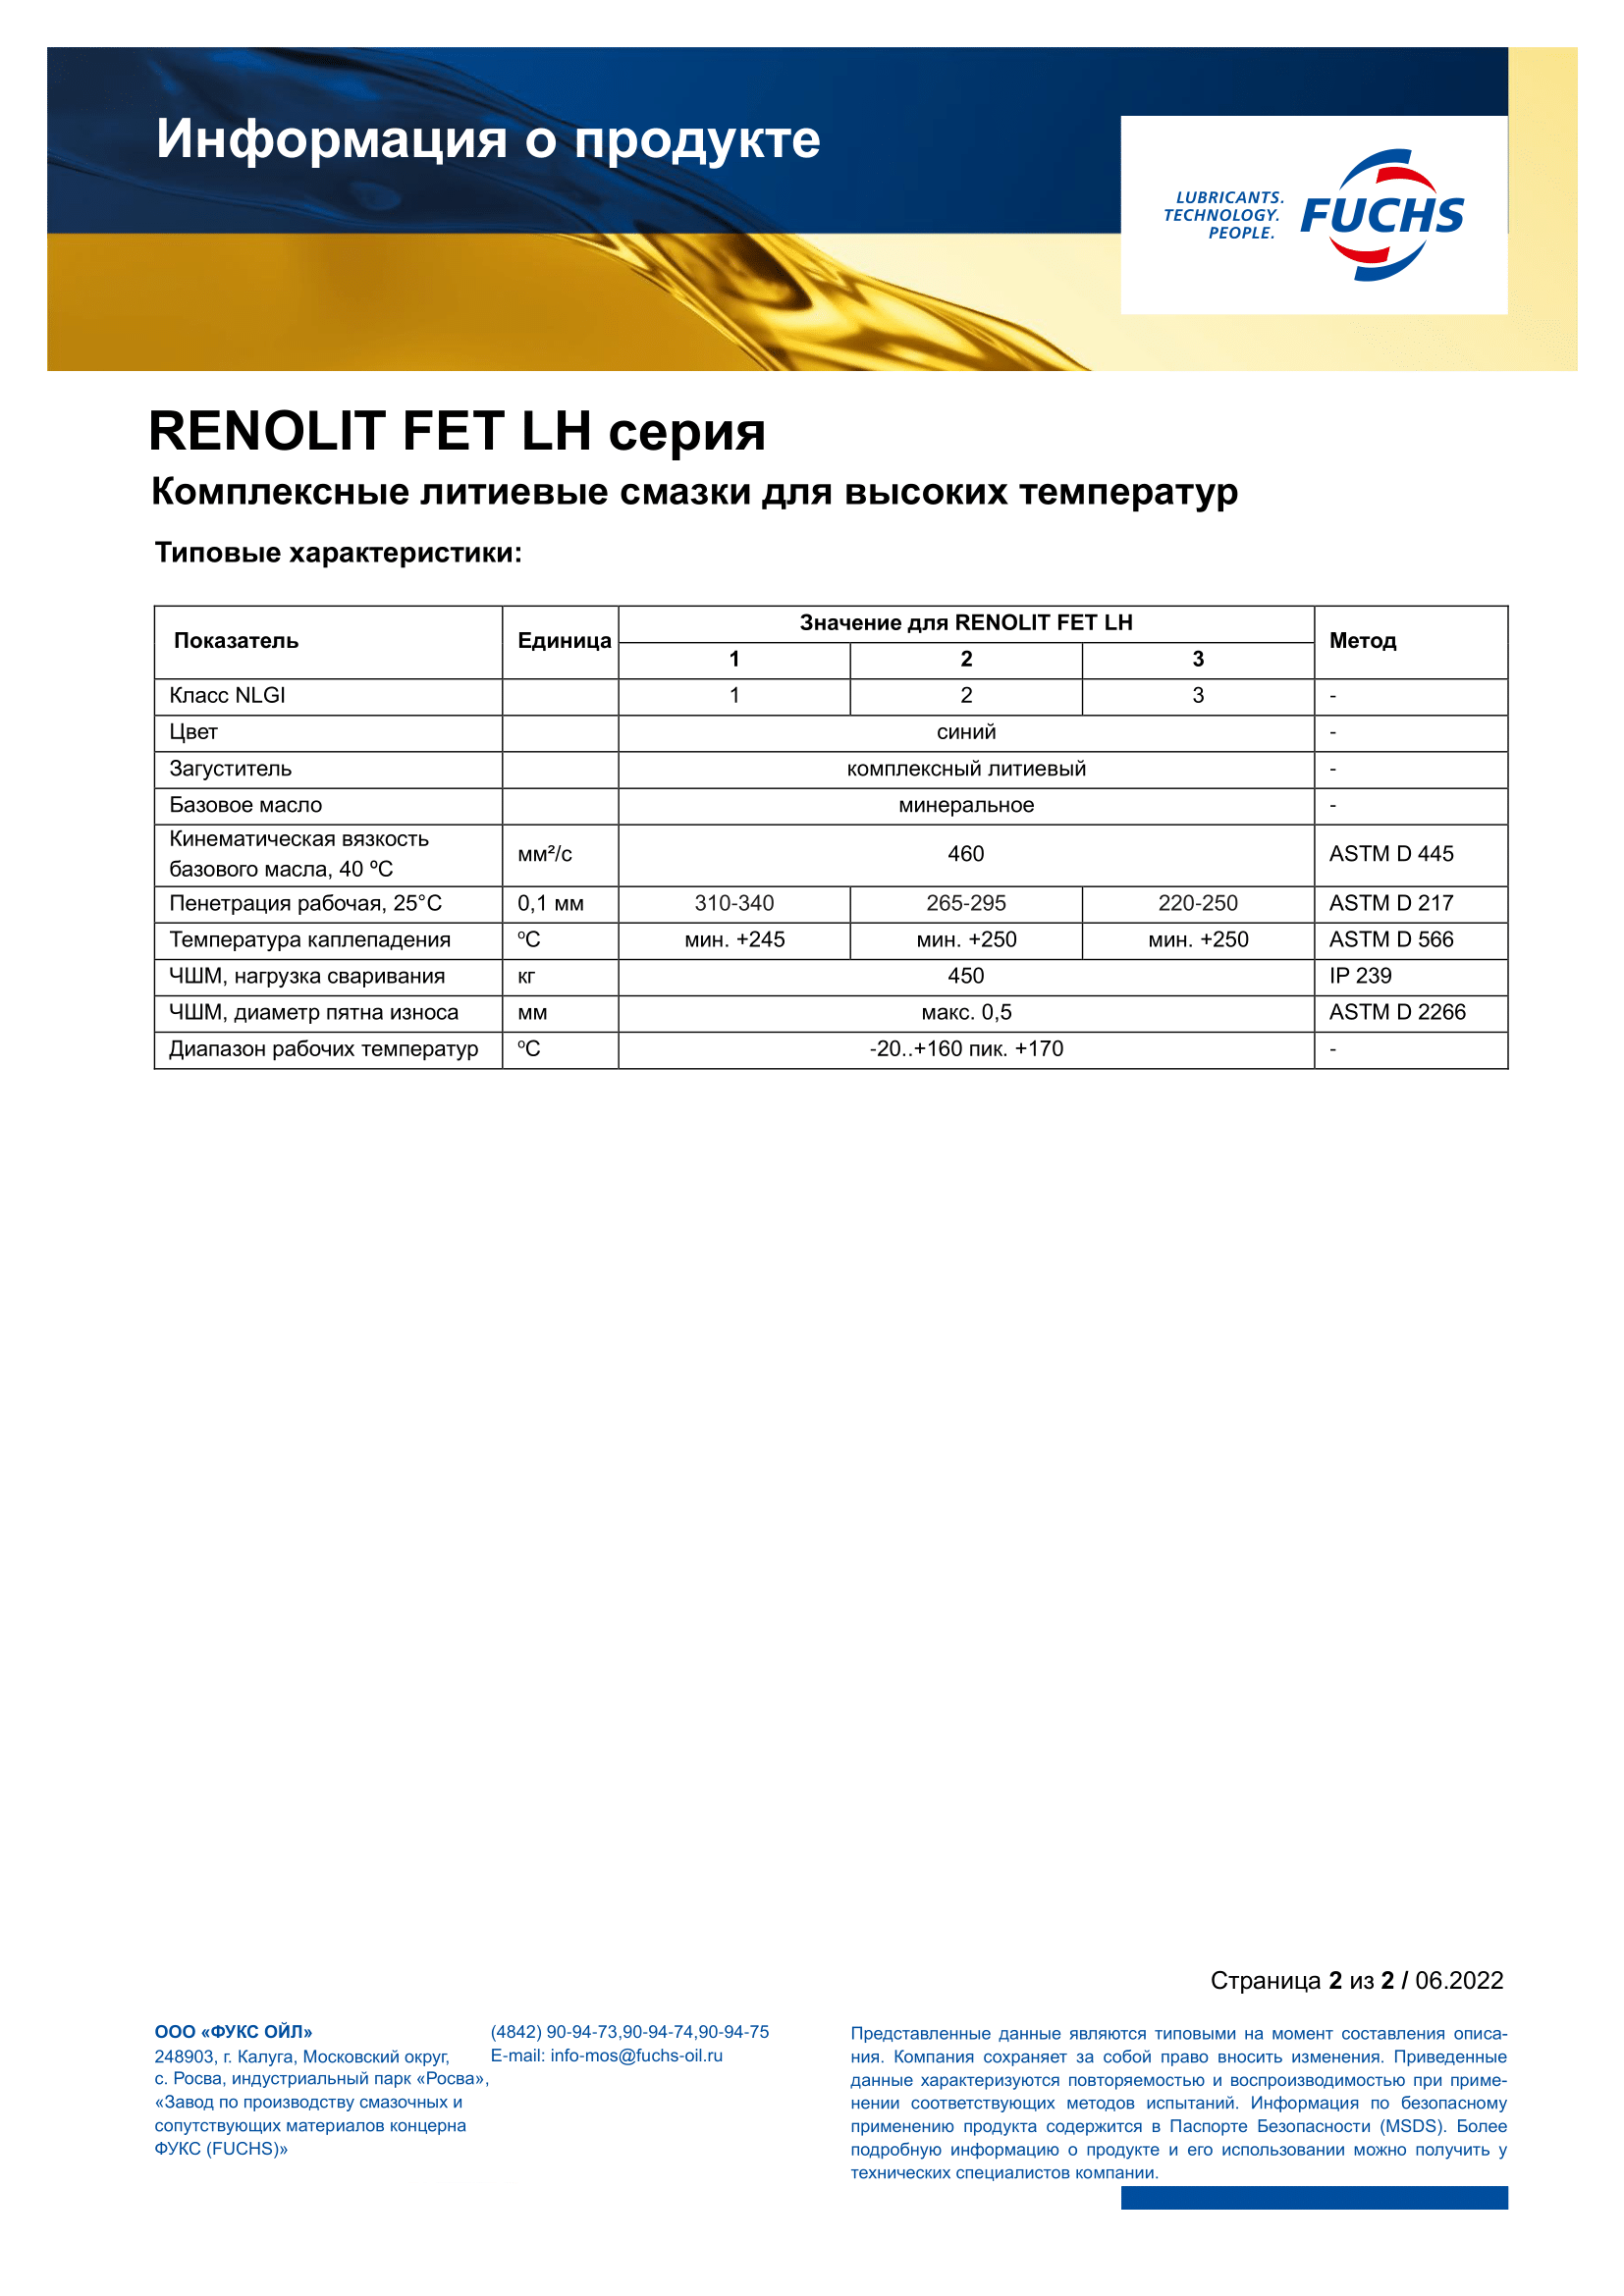 RENOLIT FET LH 1